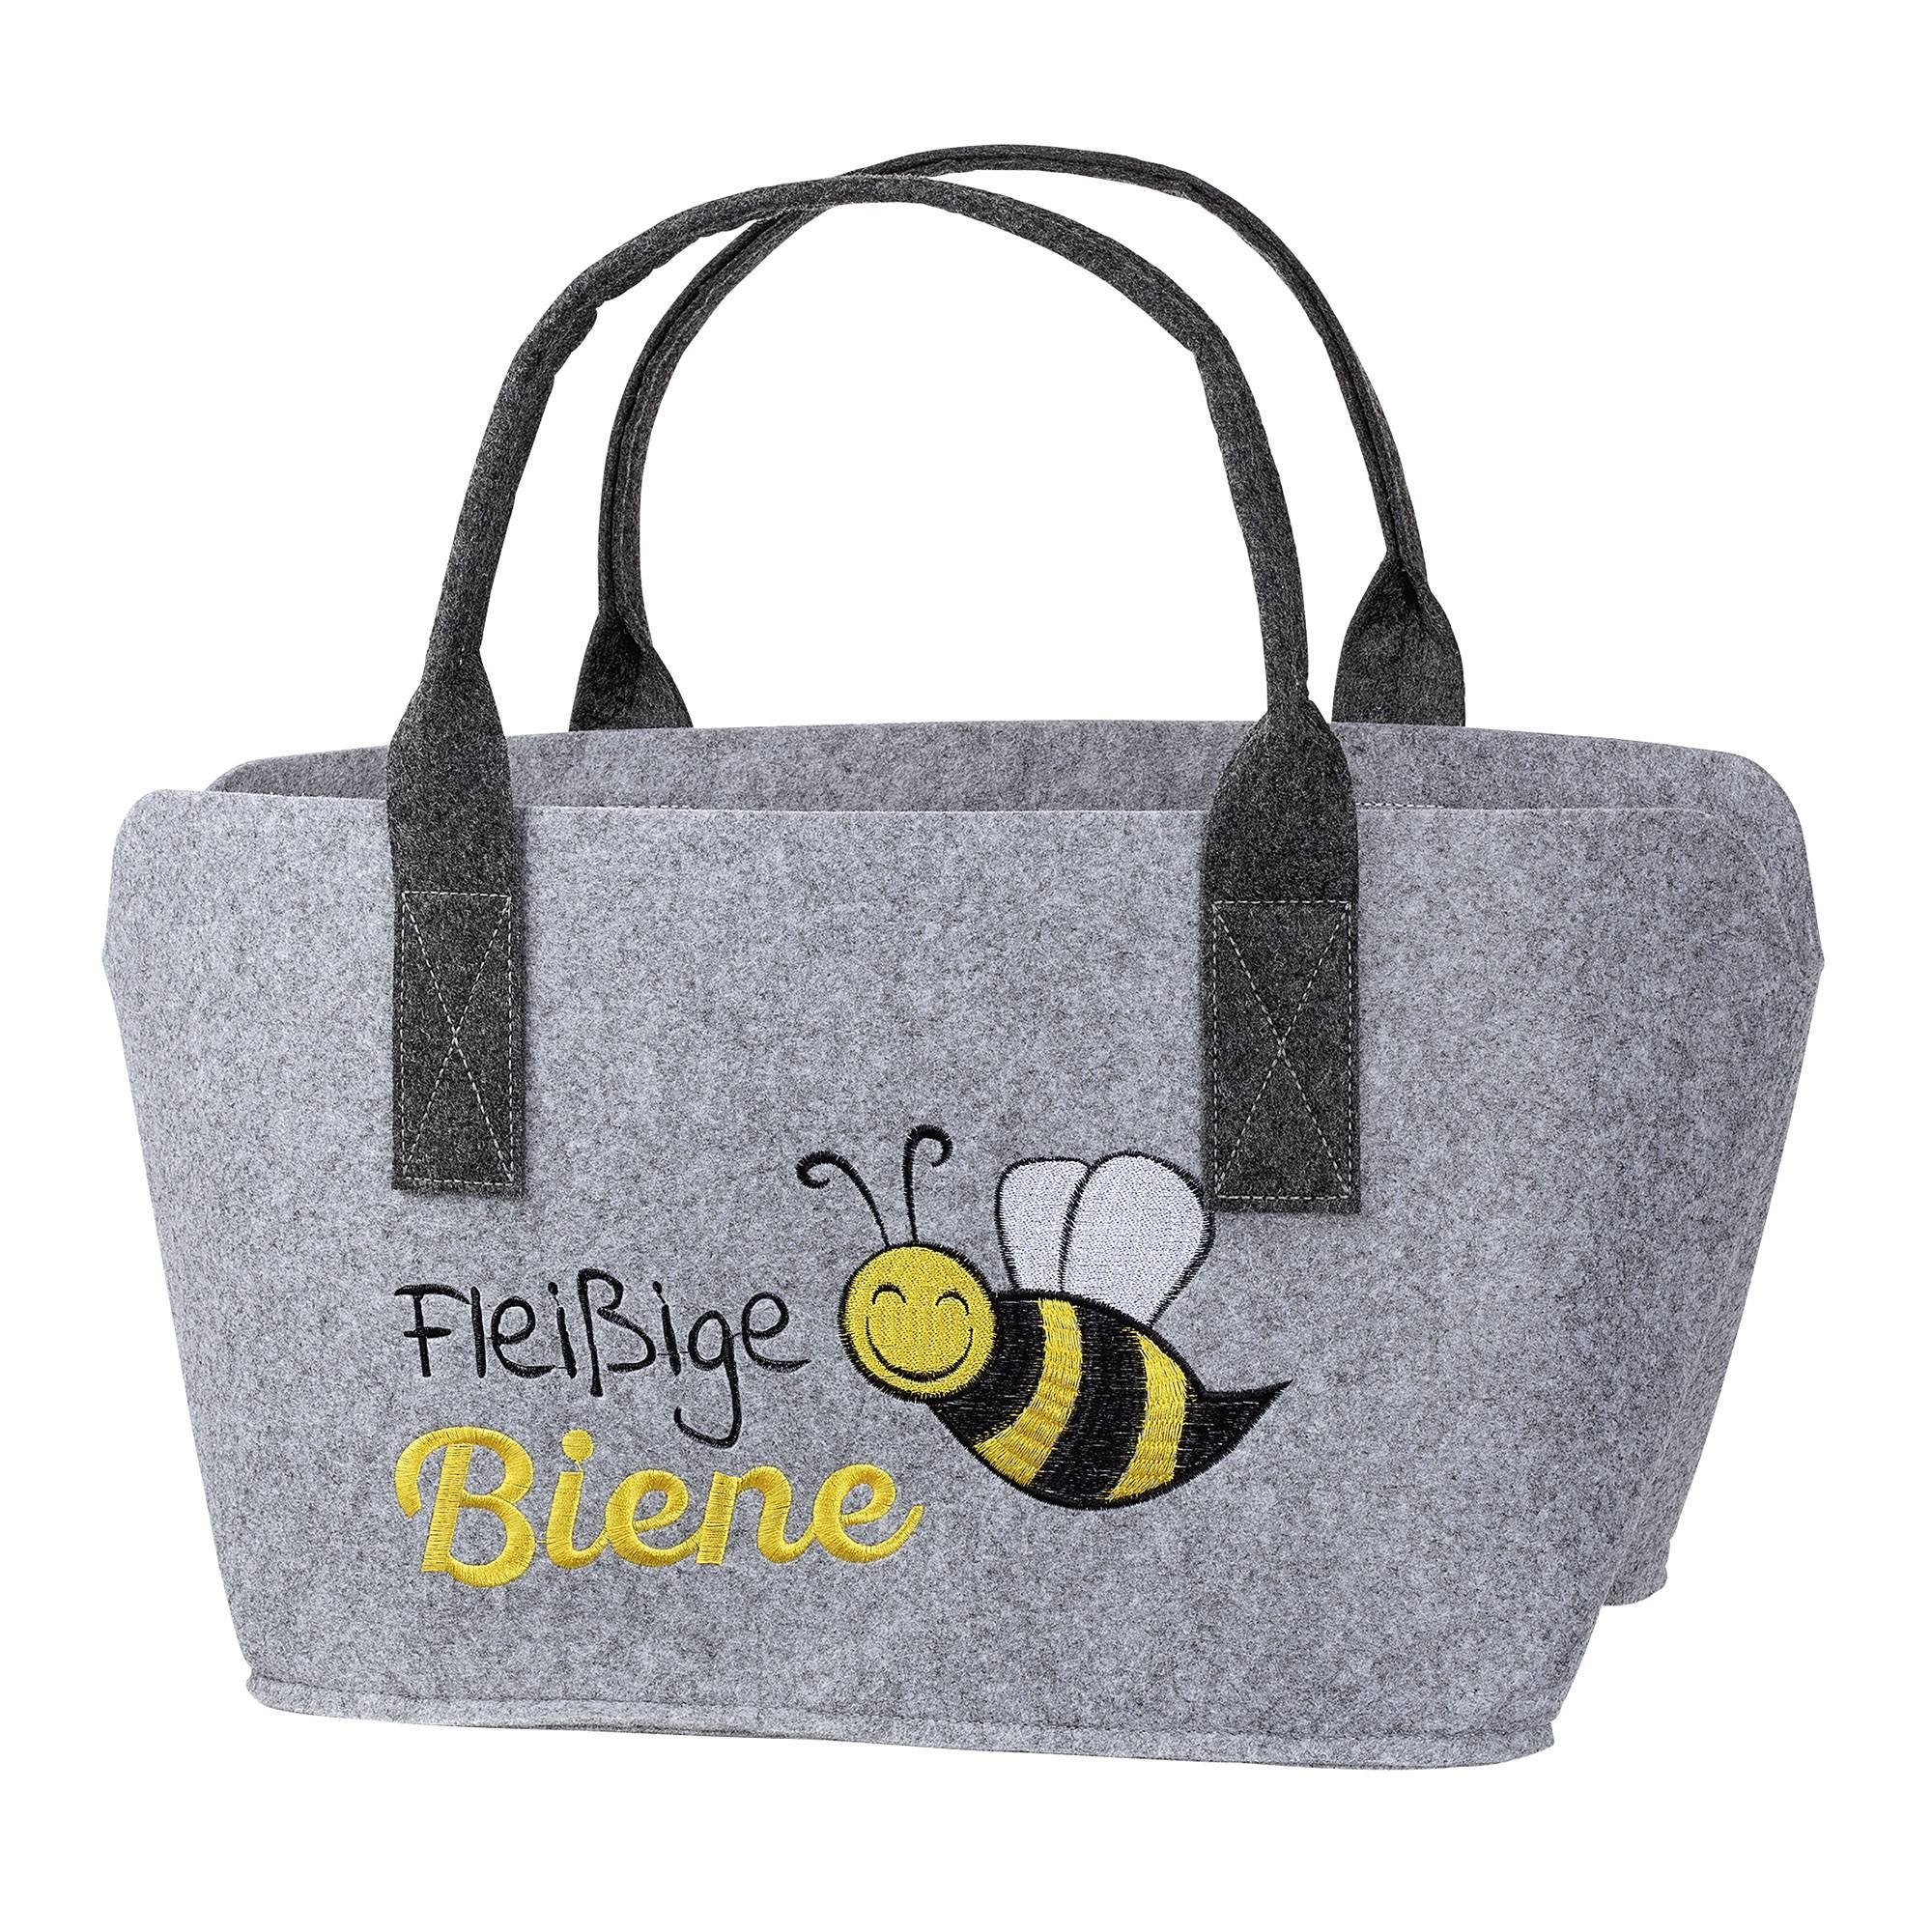 GMD Living Tragetasche BIENE, hellgrau, mit Schrift "Fleißige Biene" und Bienenmotiv, bestickt